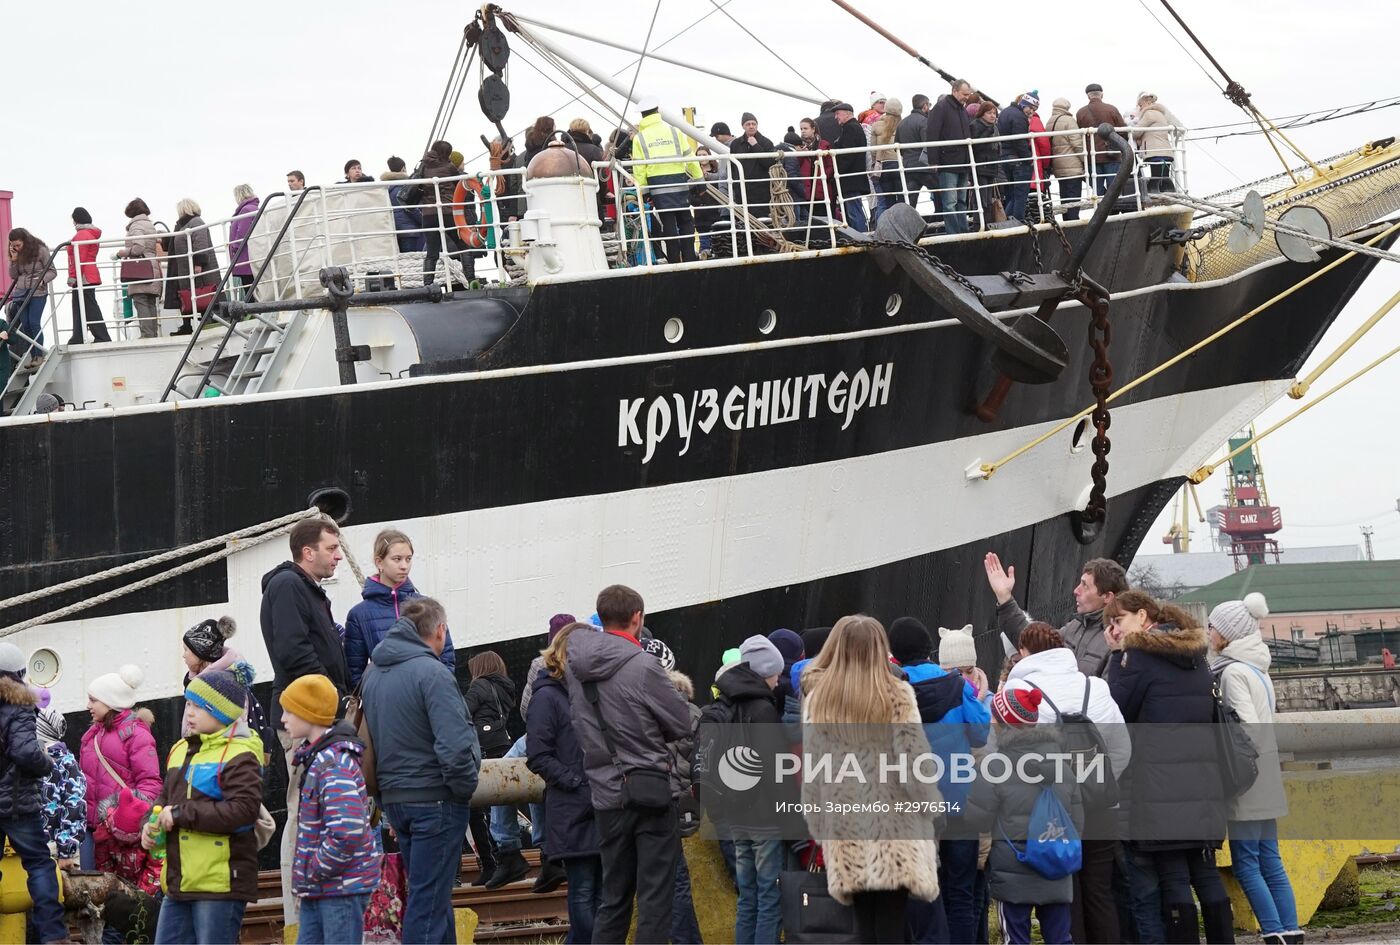 Мероприятия, посвященные 90-летию барка "Крузенштерн", в Калининграде